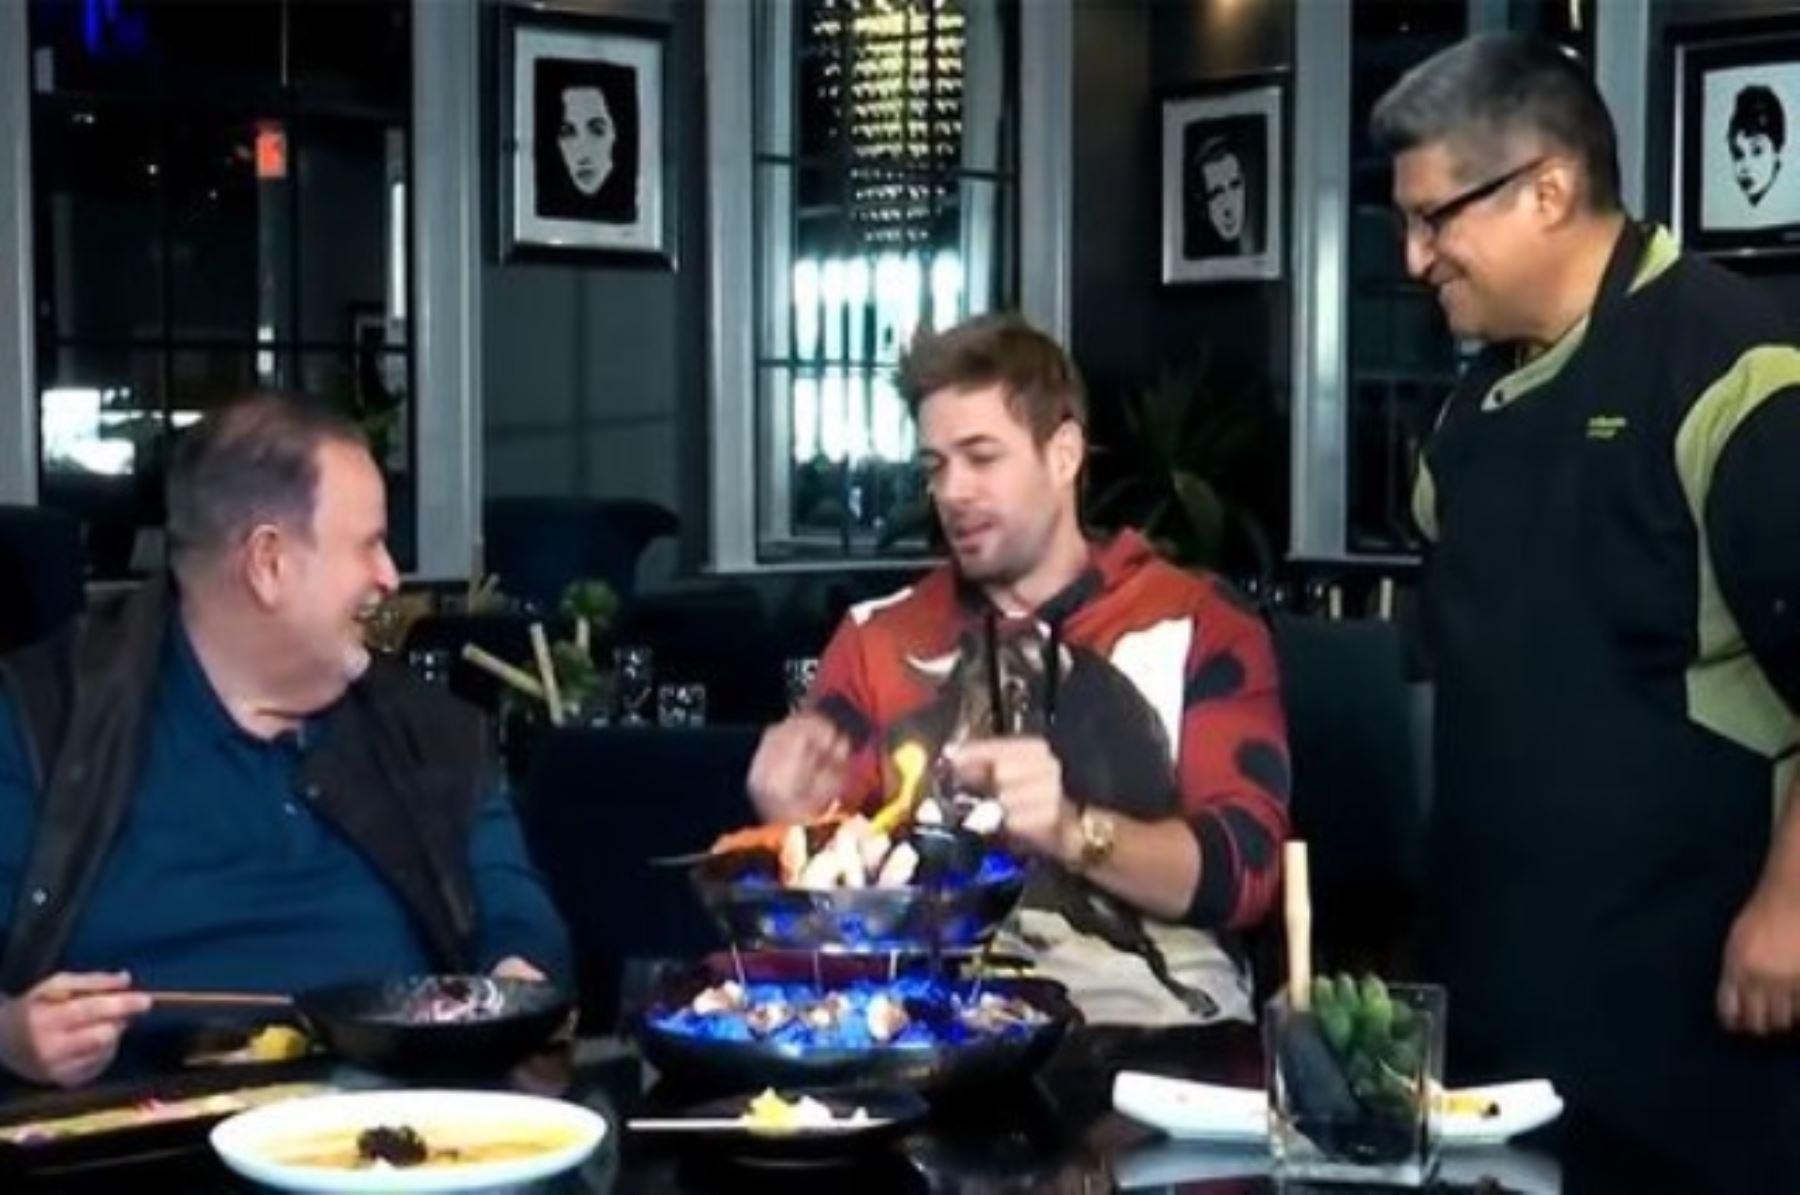 William Levy en entrevista con Raúl de Molina para "El gordo y la flaca" en su restaurante, al lado del chef ejecutivo del mismo.